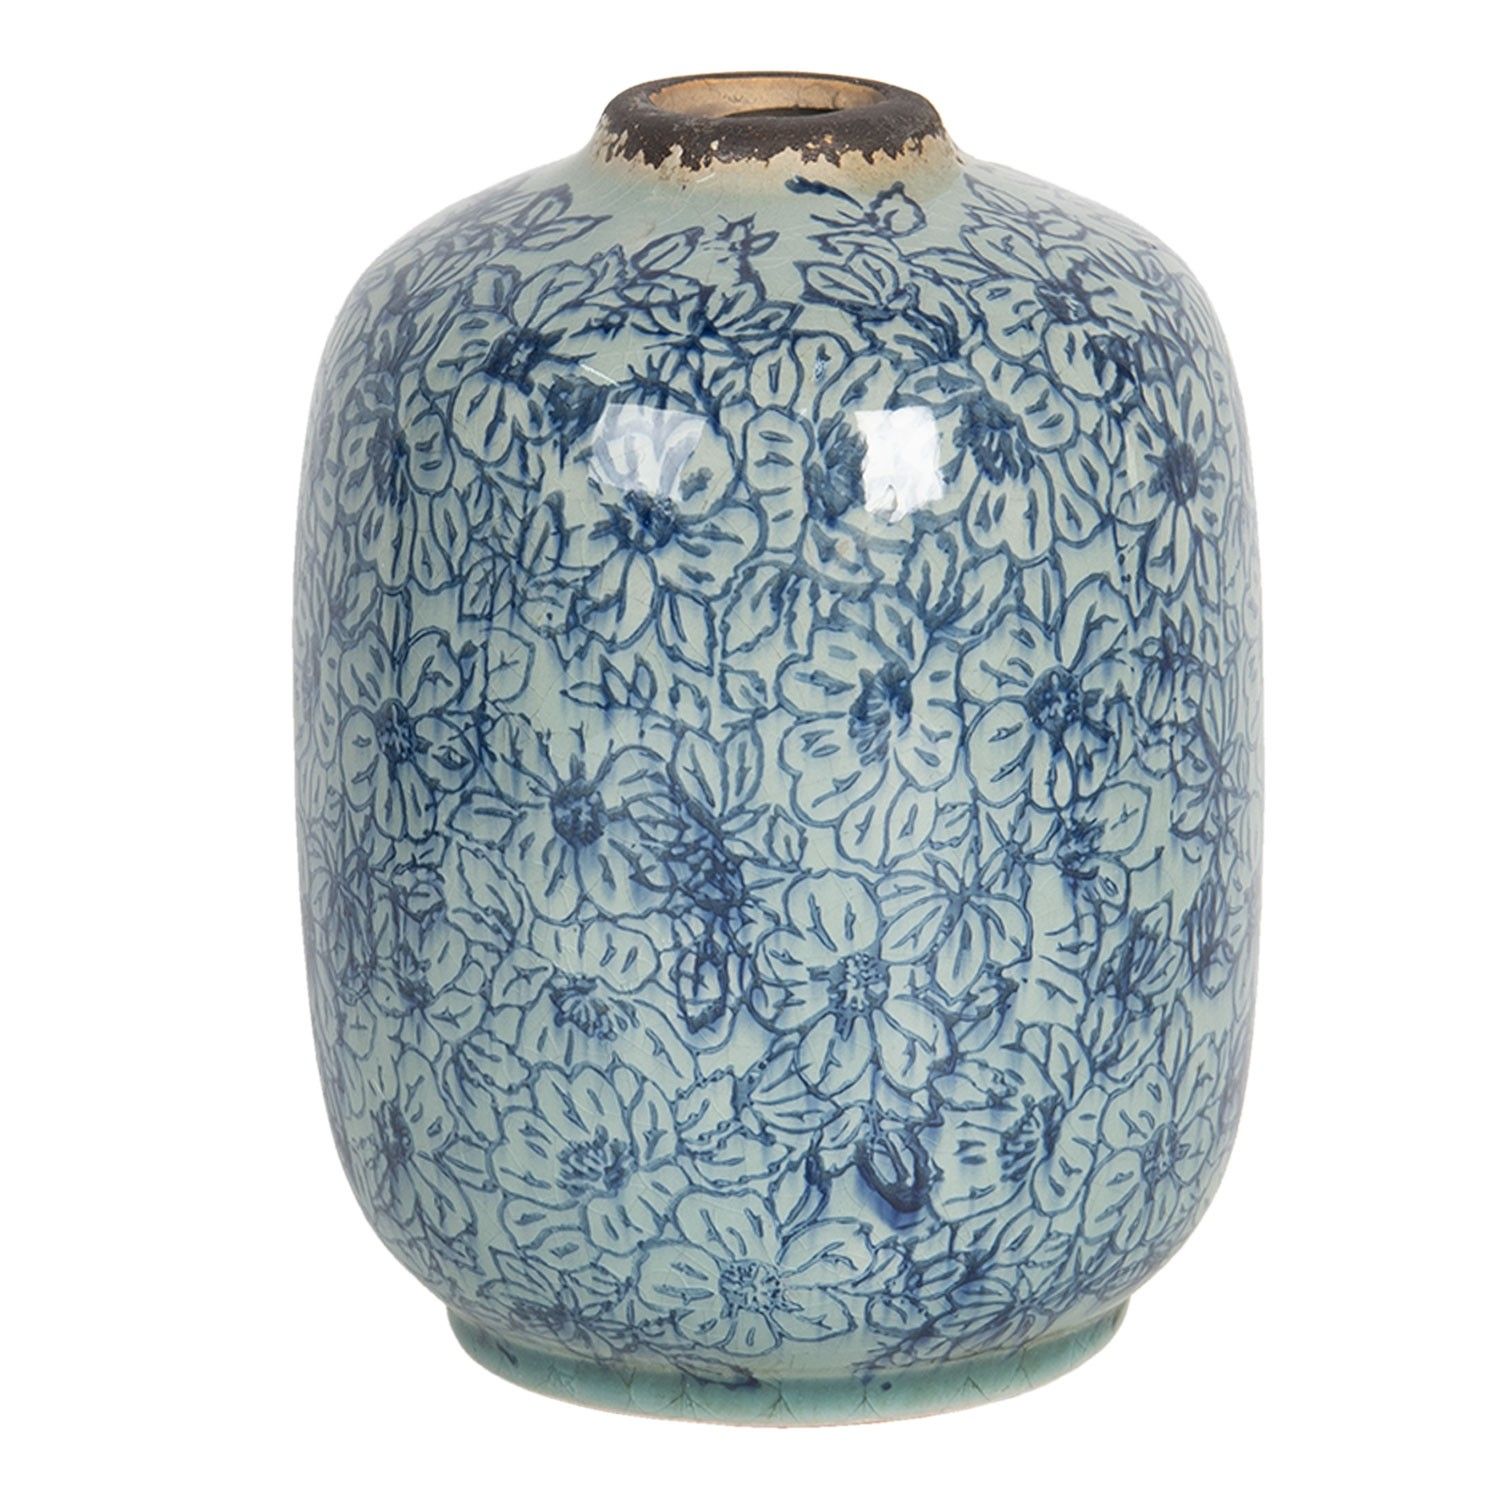 Vintage keramická váza s modrými kvítky Bleues - Ø 12*16 cm Clayre & Eef - LaHome - vintage dekorace